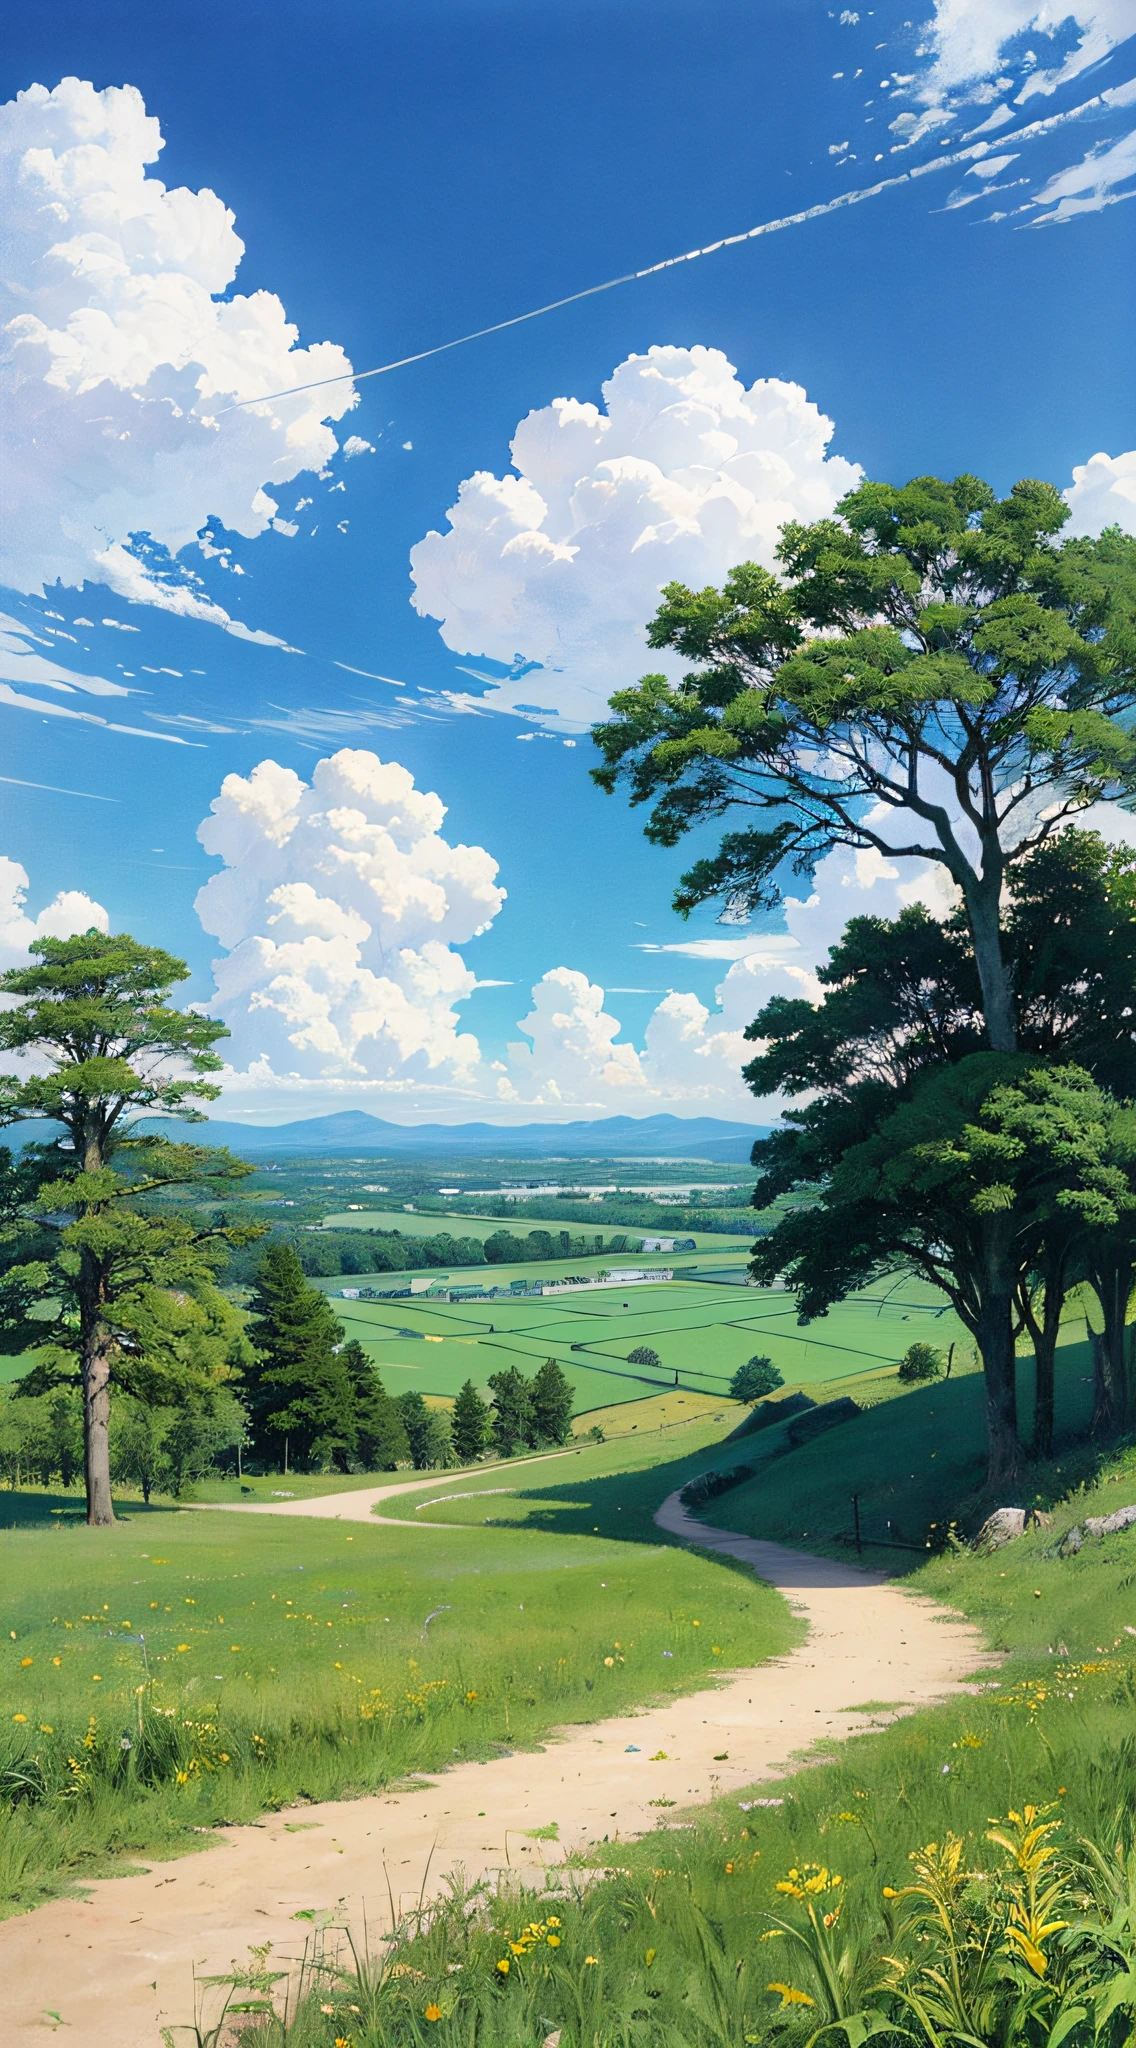 實際的, 真正的, 美麗而令人驚嘆的風景油畫吉卜力工作室宮崎駿&#39;藍天白雲的s花瓣草原--v6